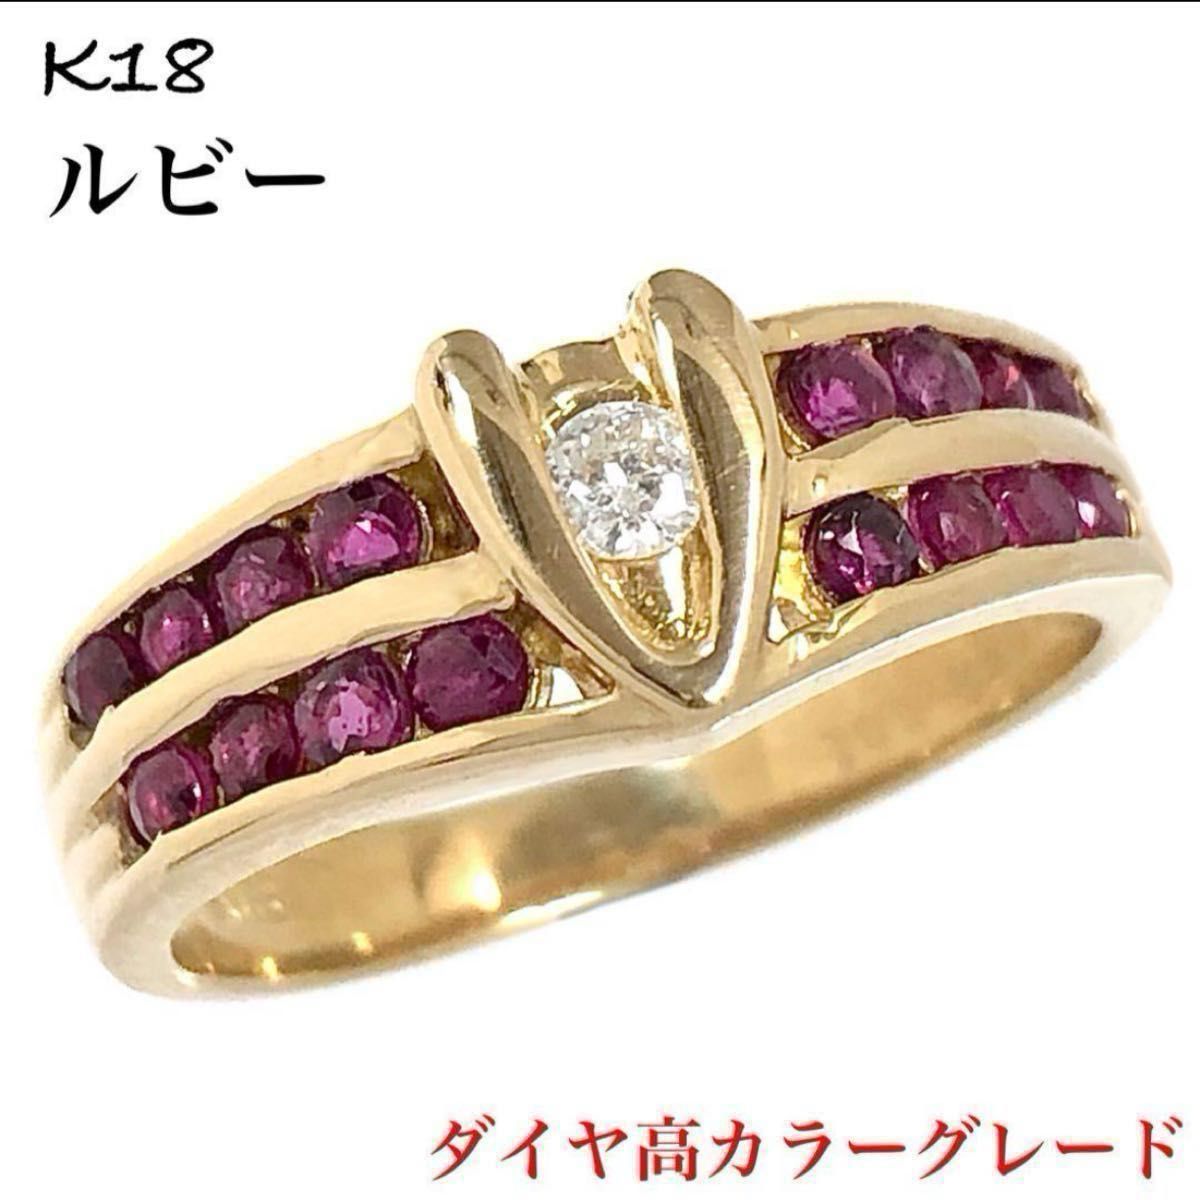 高級 K18 ルビー 0.62ct ダイヤモンド ダイヤ リング 指輪 一粒